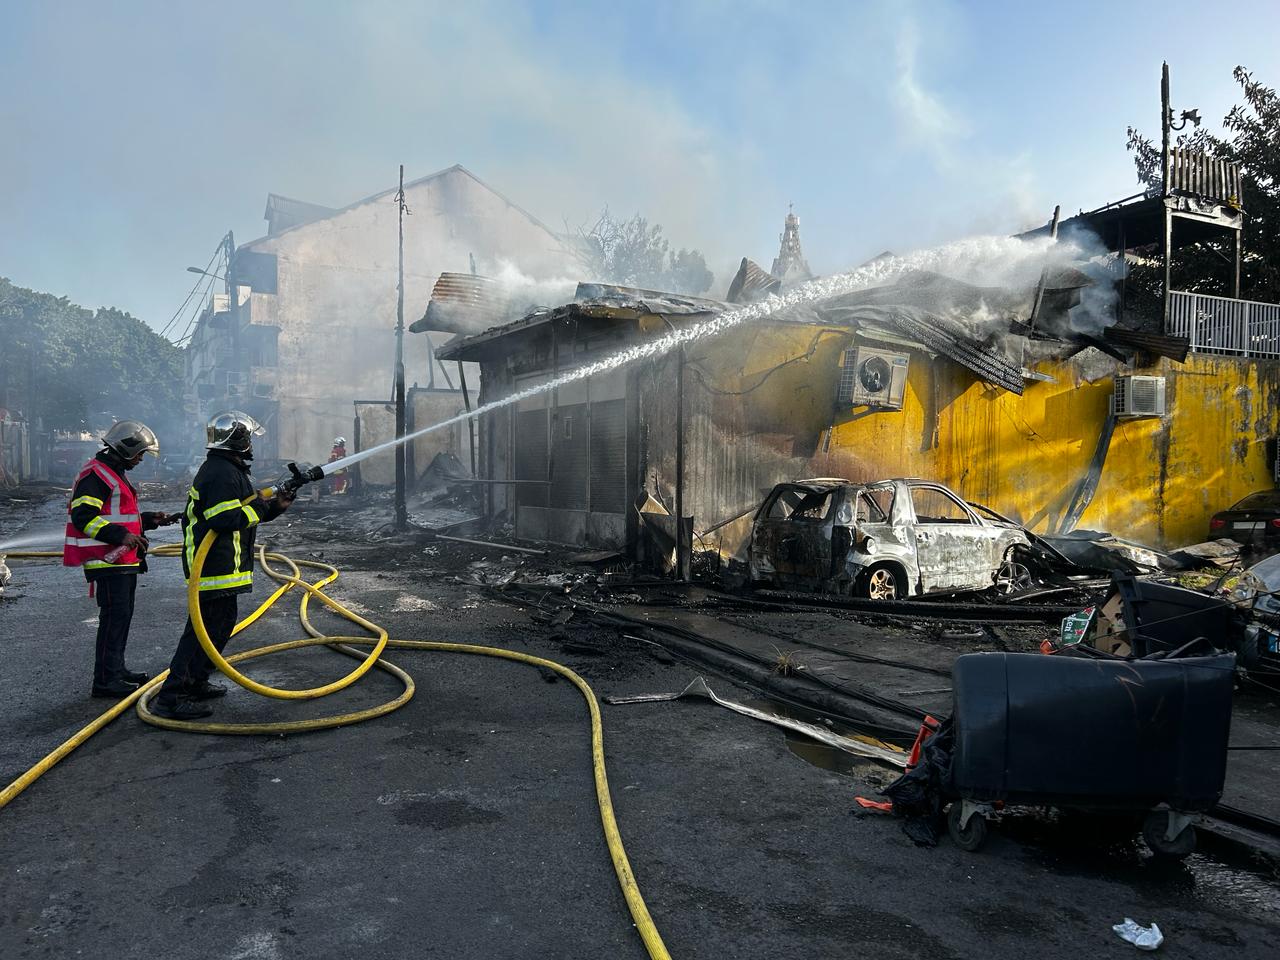     7 habitations détruites par un incendie à Pointe-à-Pitre

